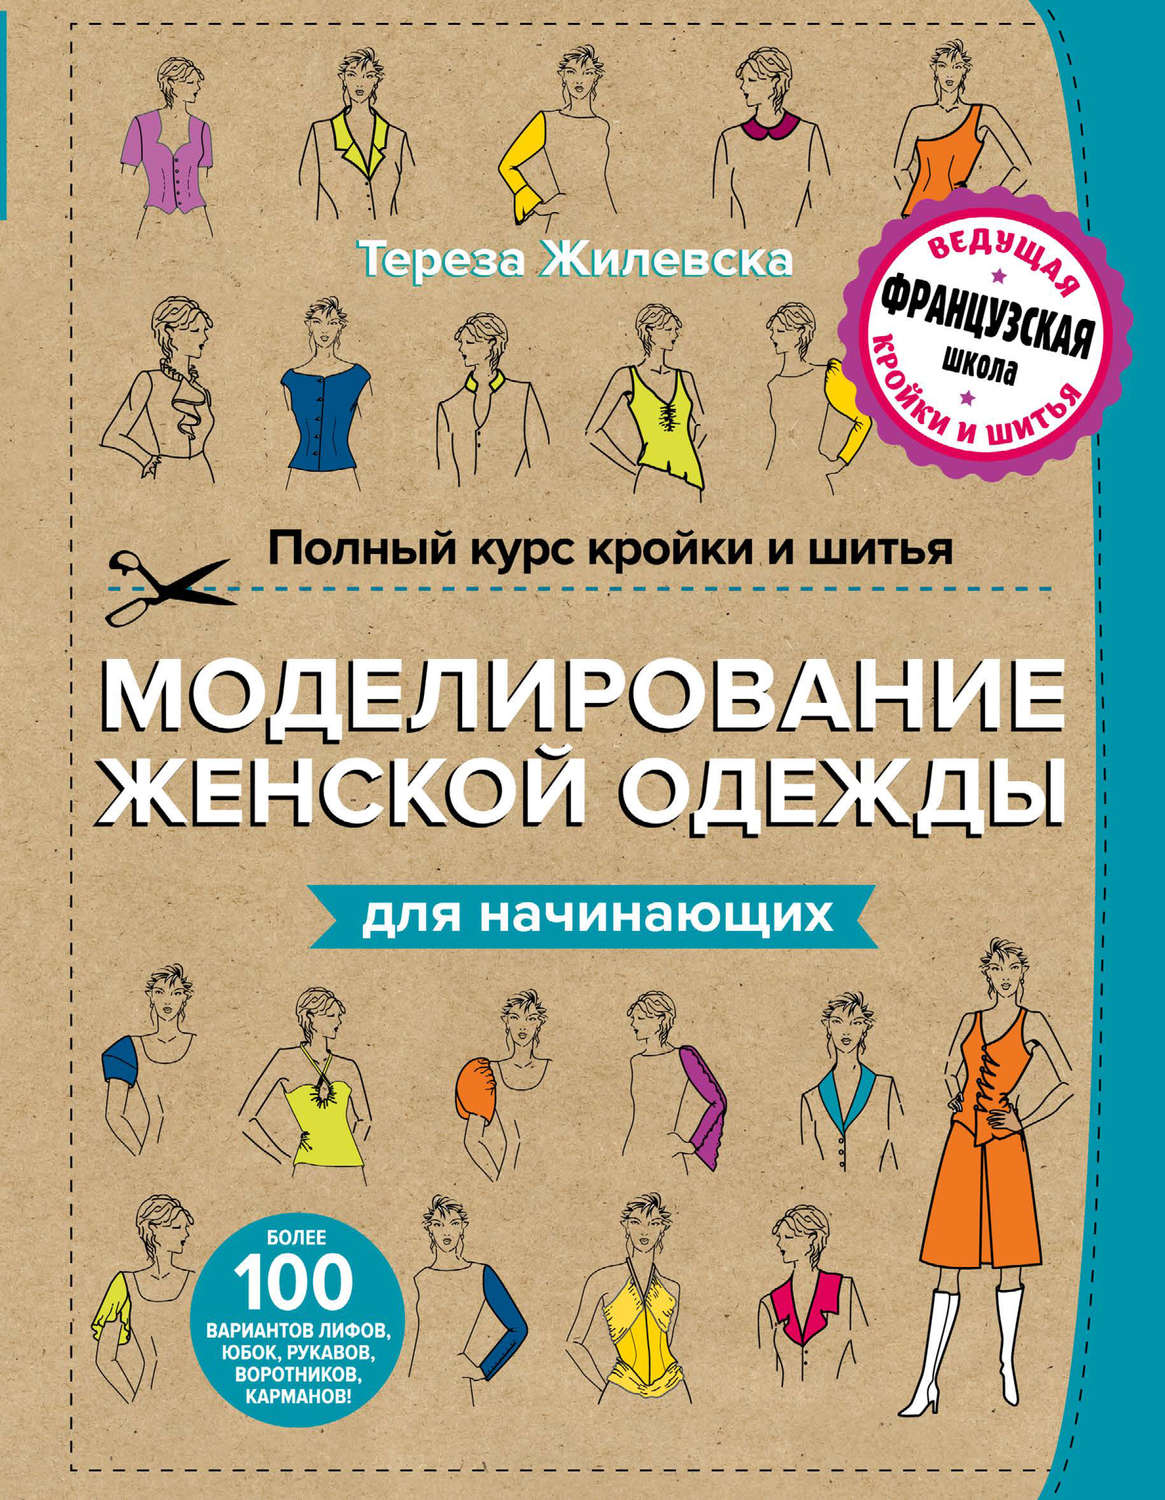 Курсы кройки и шитья в Екатеринбурге, уроки кройки и шитья для начинающих